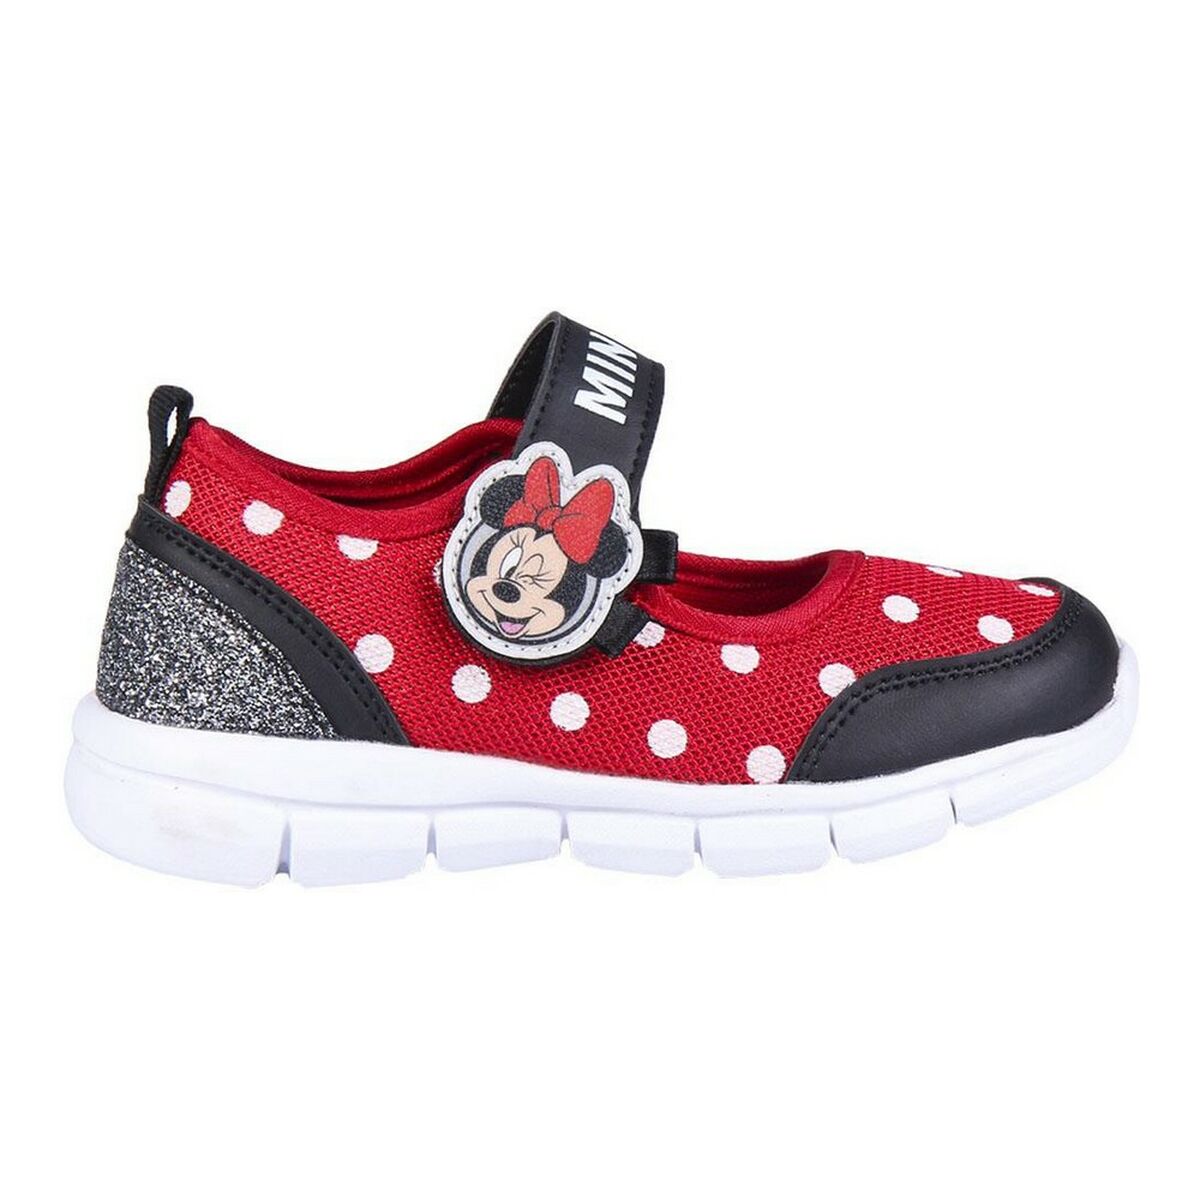 Chaussure de ballerine pour fille Minnie Mouse Rouge